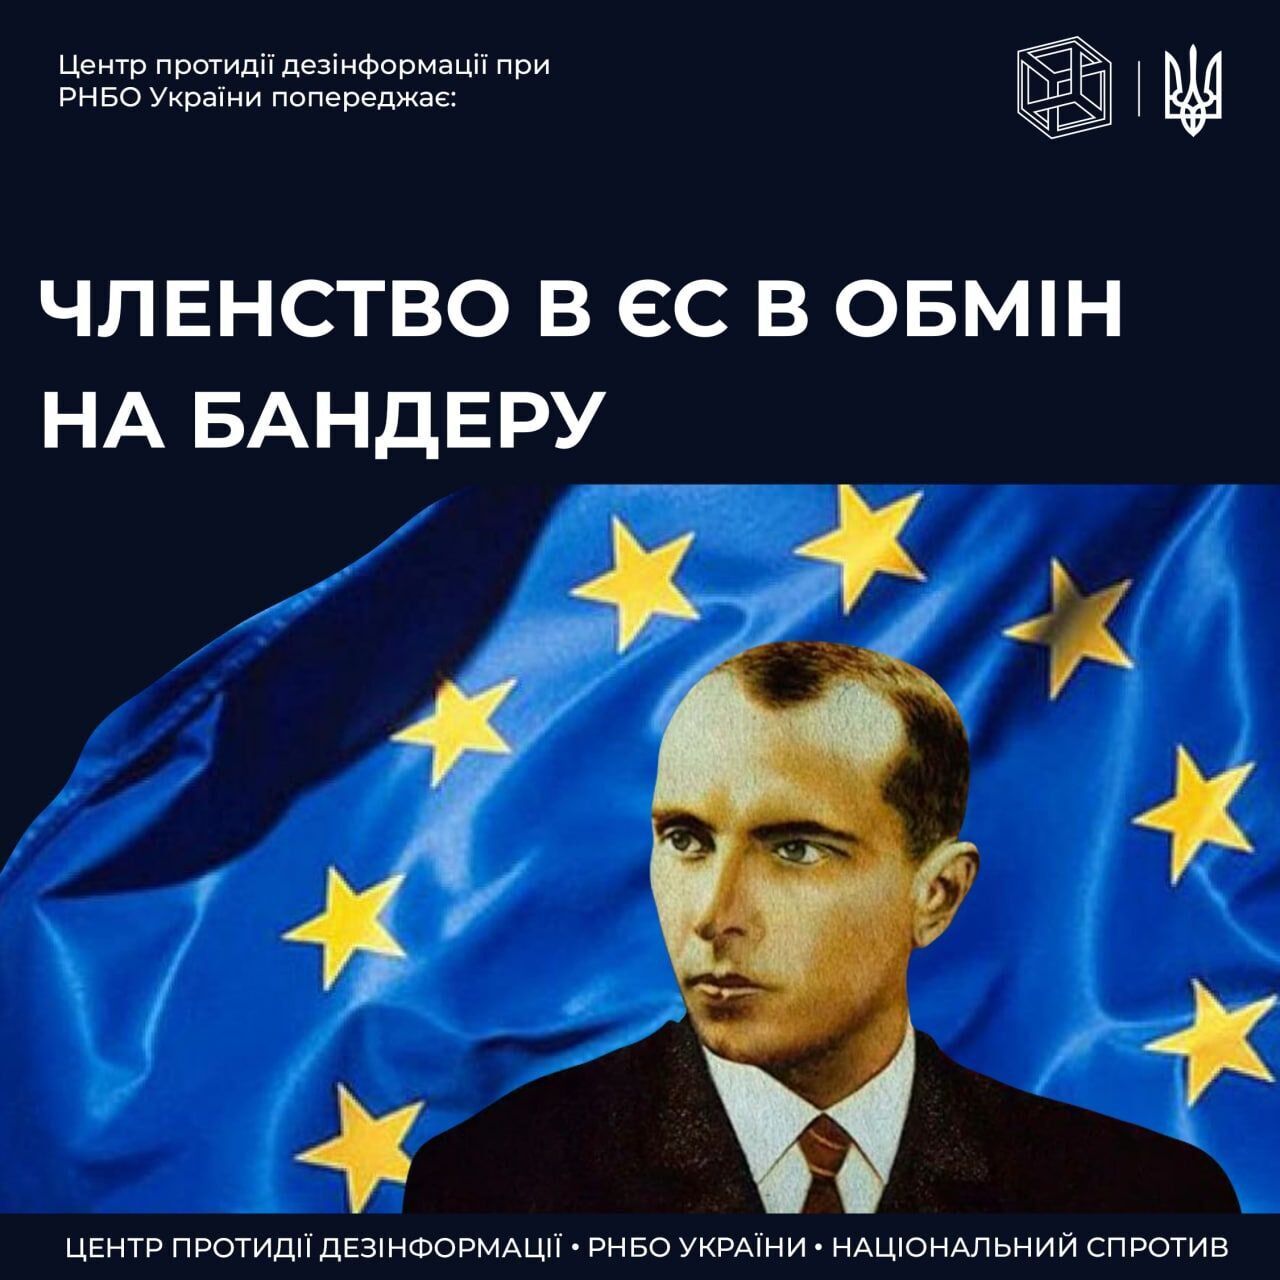 Россия запустила фейк о требовании ЕС к Украине прекратить прославлять Бандеру